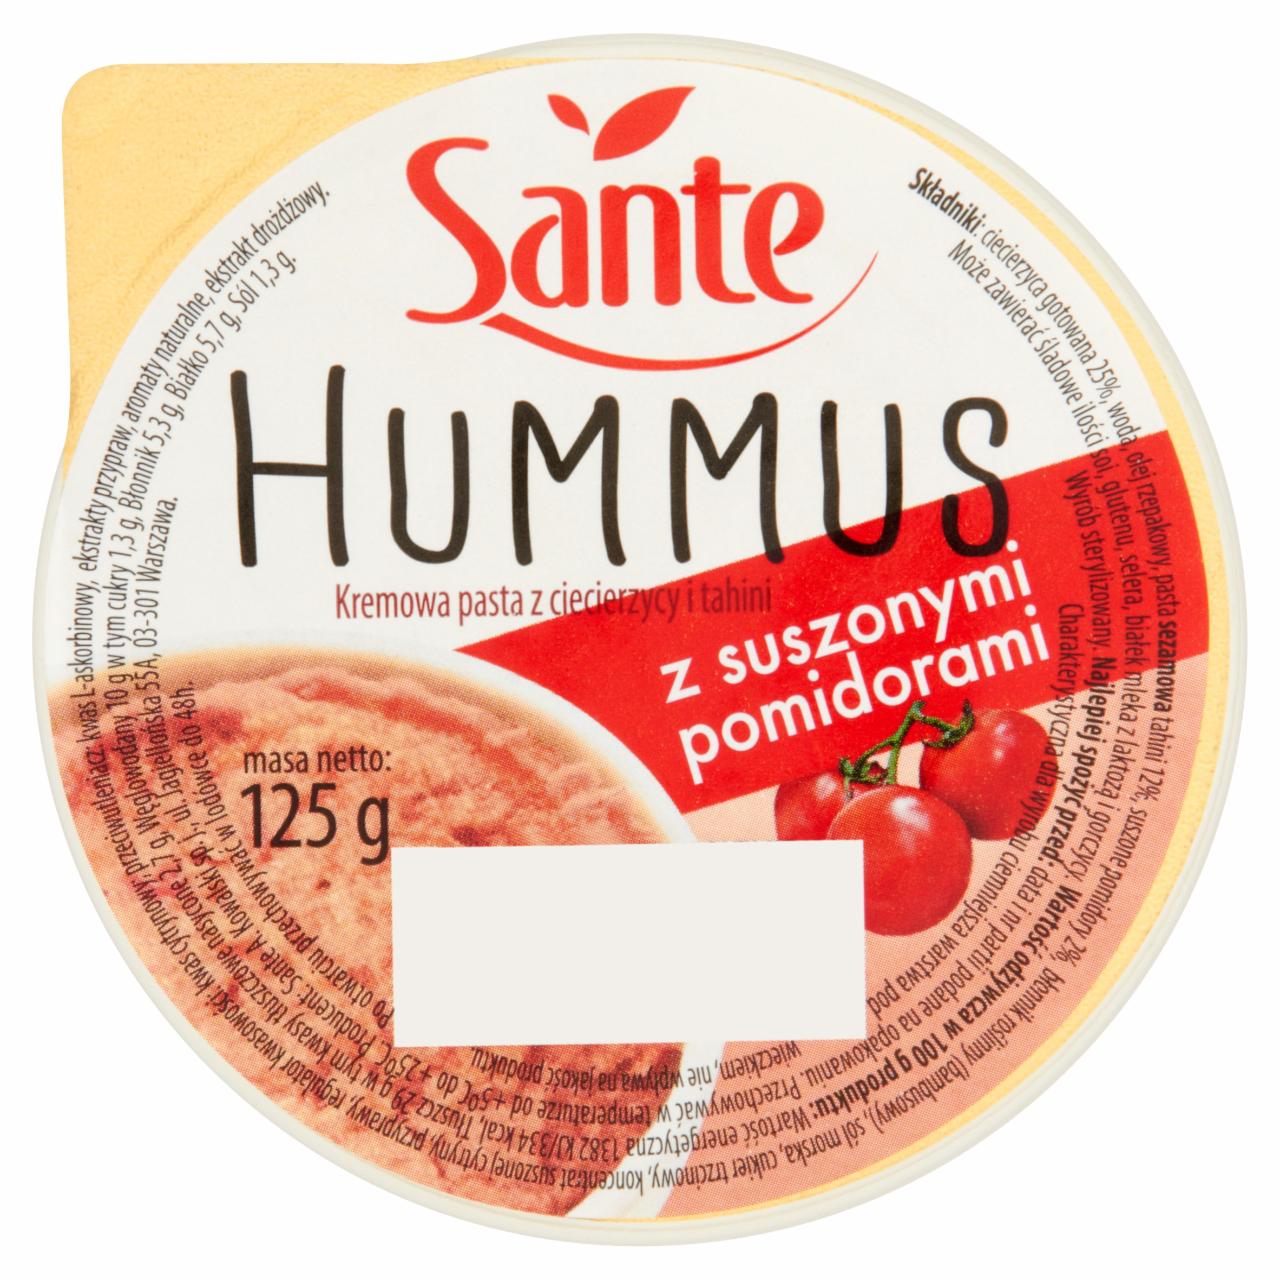 Zdjęcia - Sante Hummus z suszonymi pomidorami Kremowa pasta z ciecierzycy i tahini 125 g